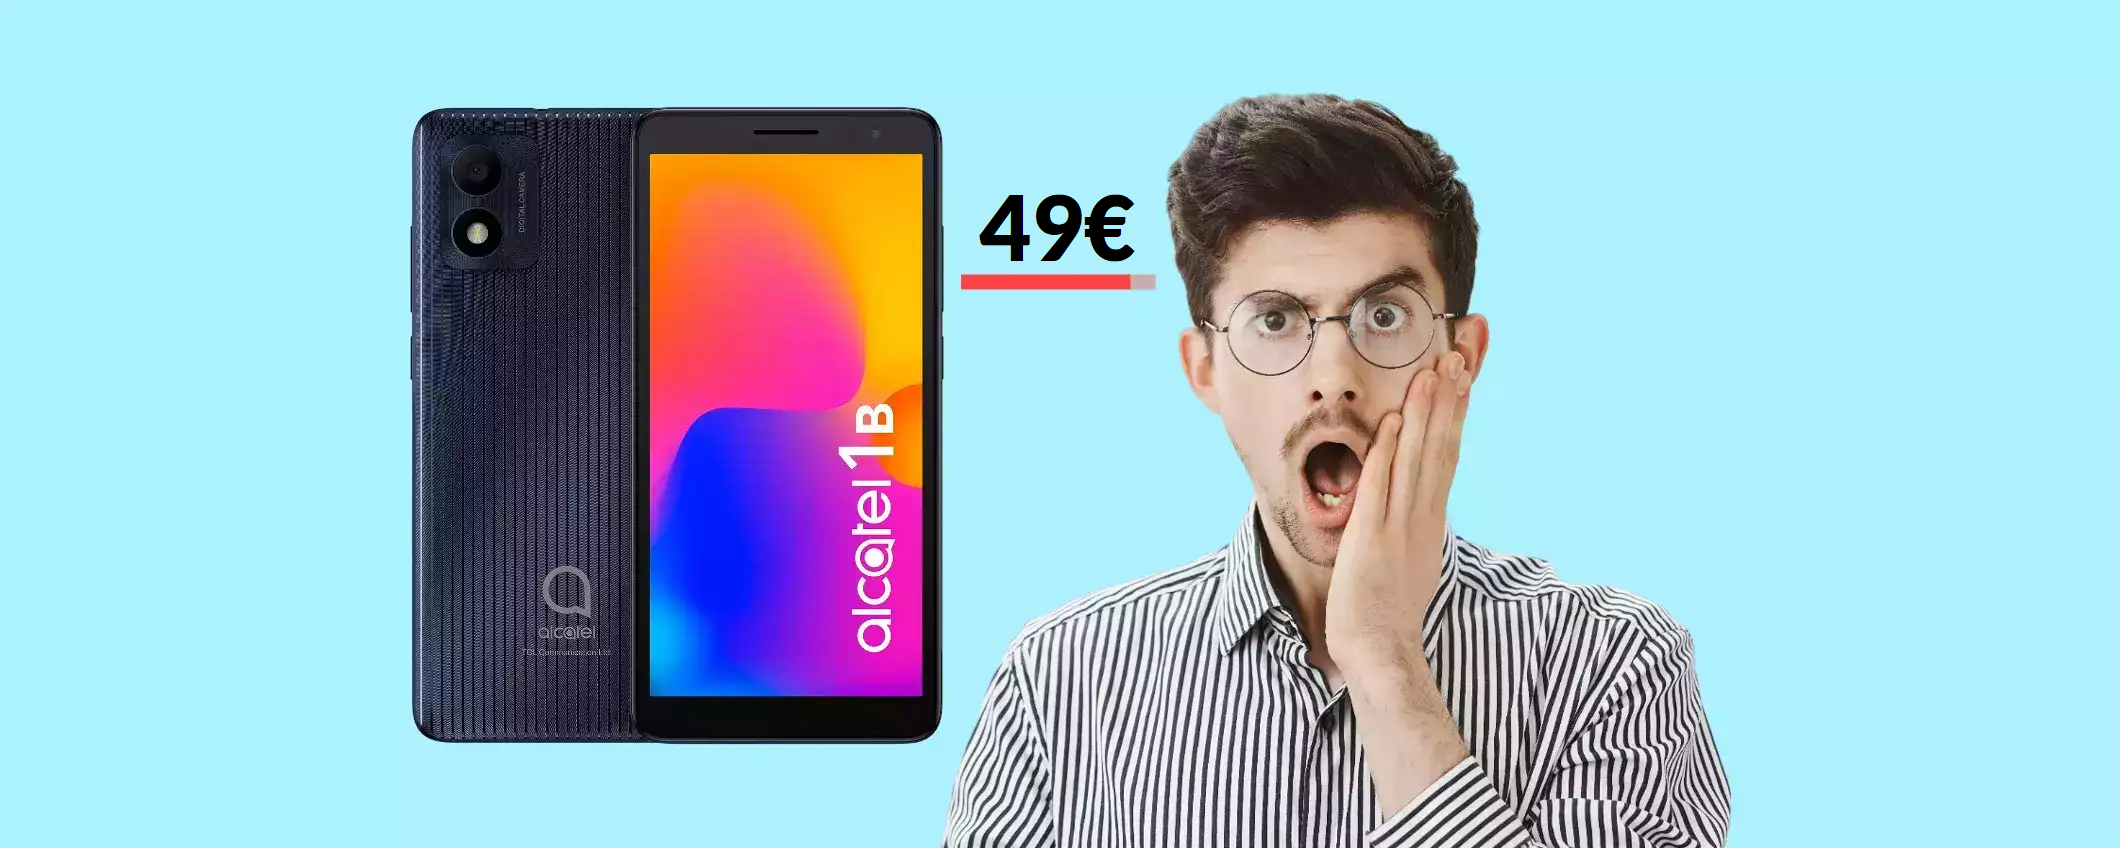 Questo smartphone Android è tuo ad un prezzo SHOCK: solo 49€